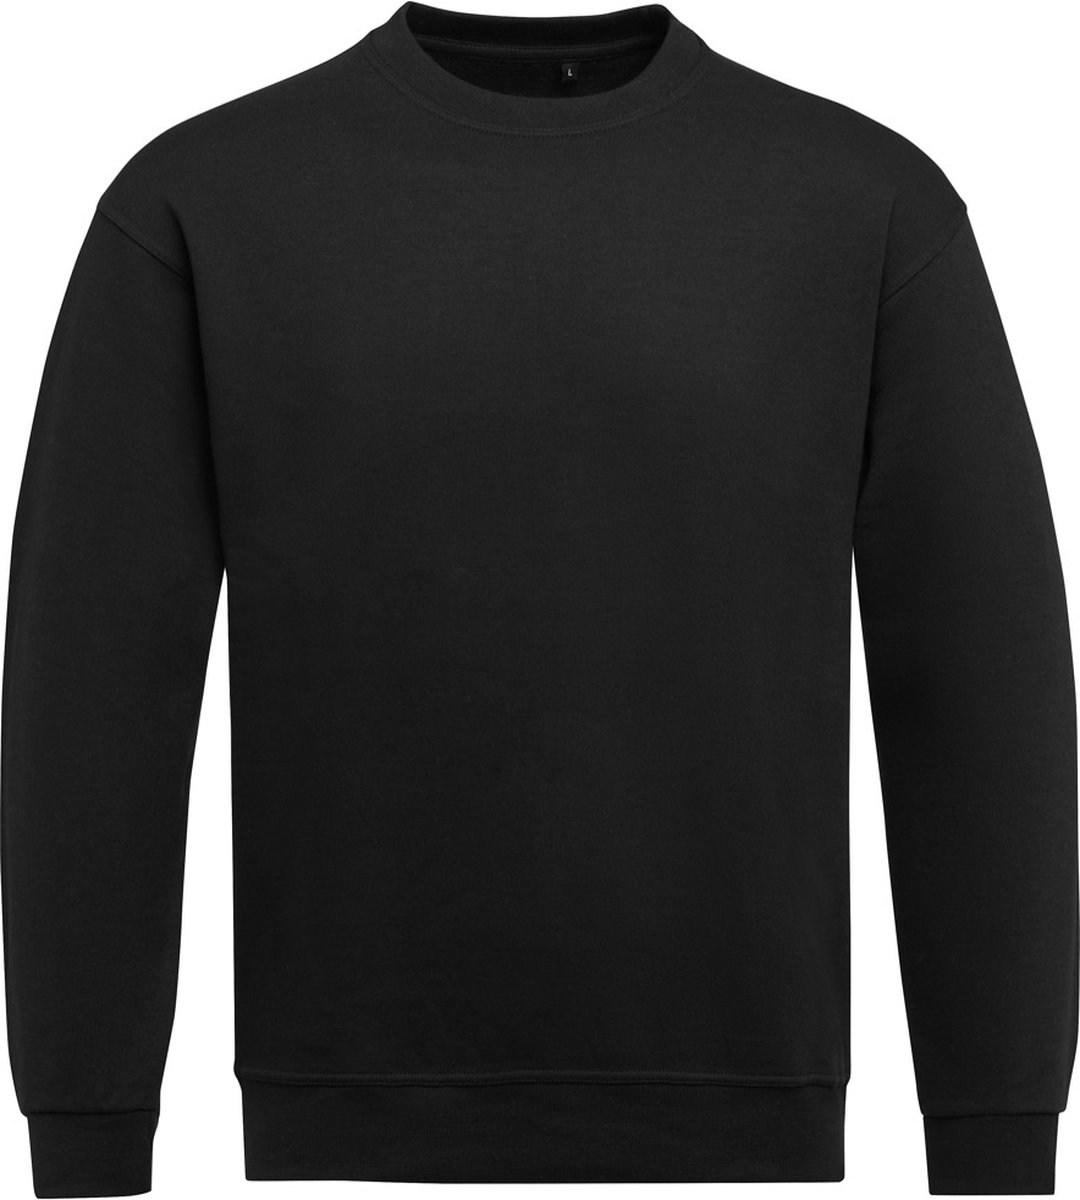 Zwarte heren sweater Crew Neck merk SG maat 3XL